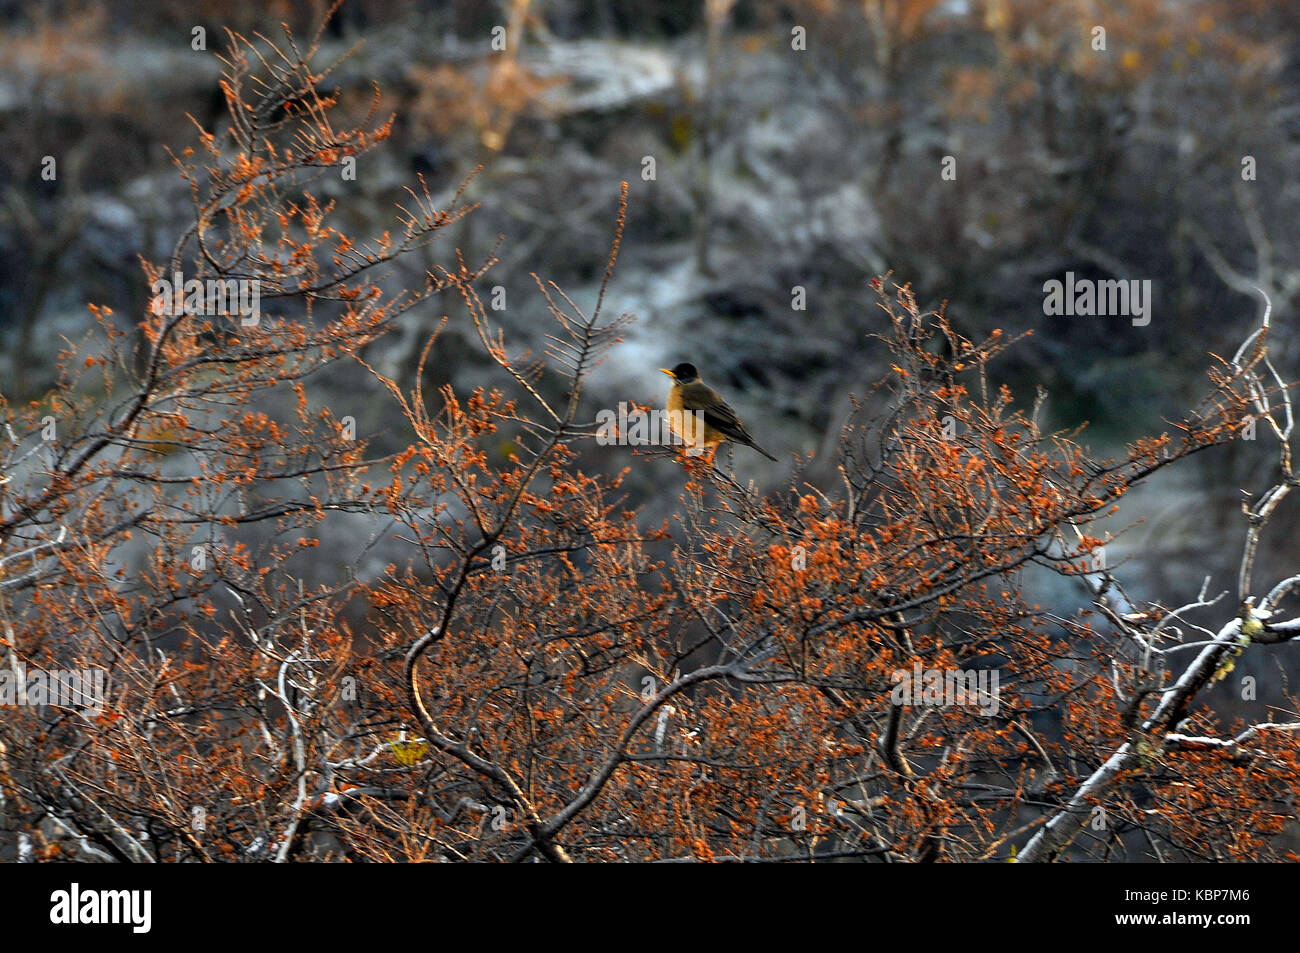 fauna at patagonia Stock Photo